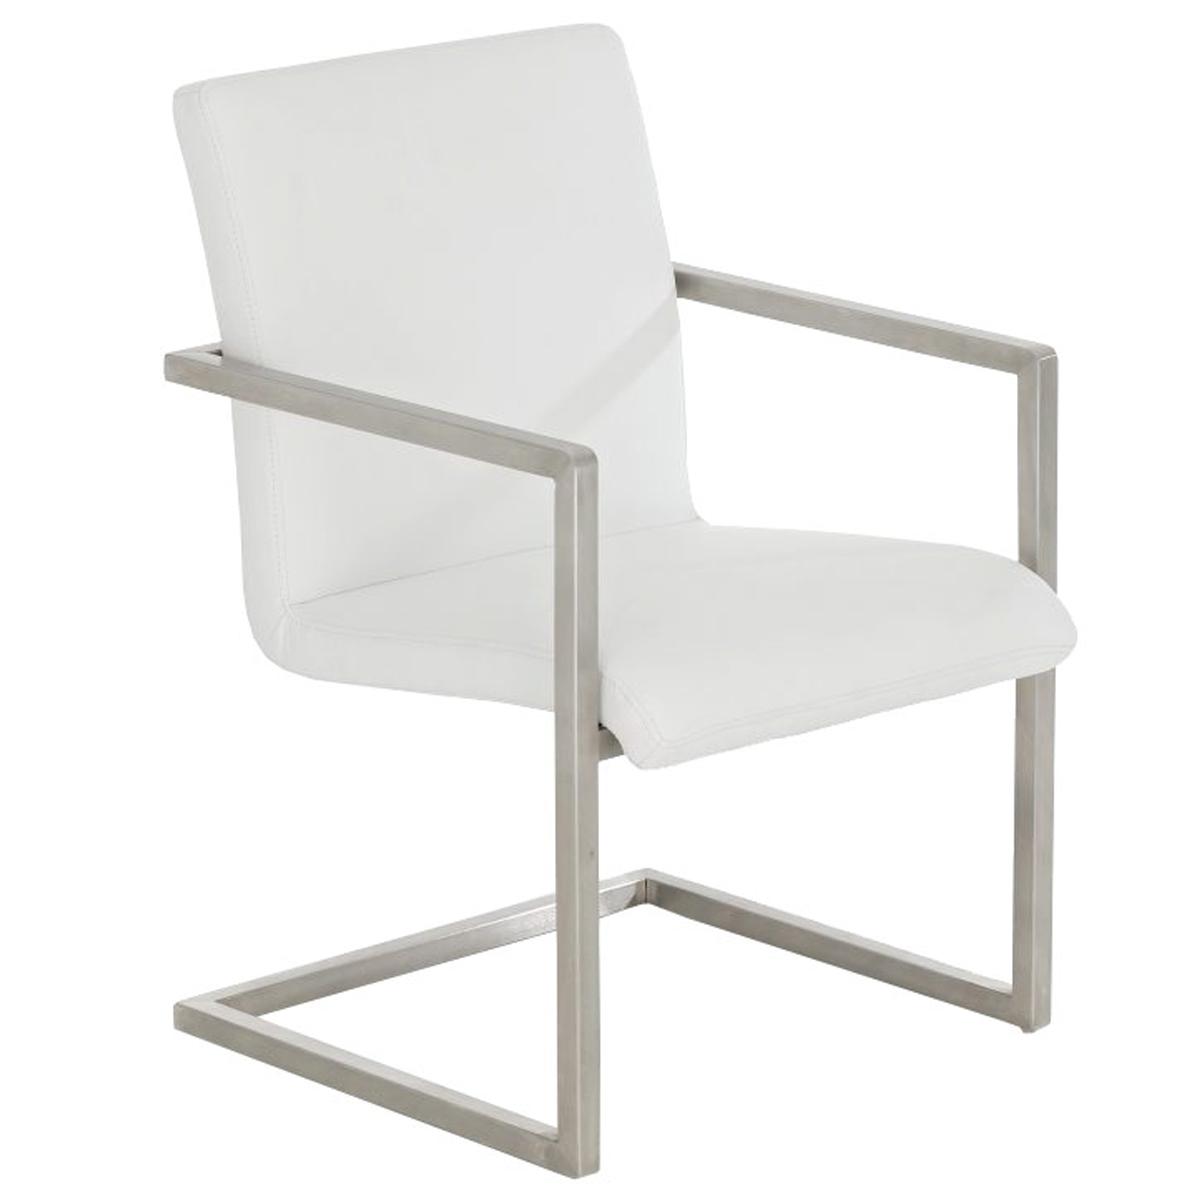 Chaise visiteur OWEN, Structure en Acier Inoxyidable, Design Exclusif, Revêtement en Cuir, Blanc